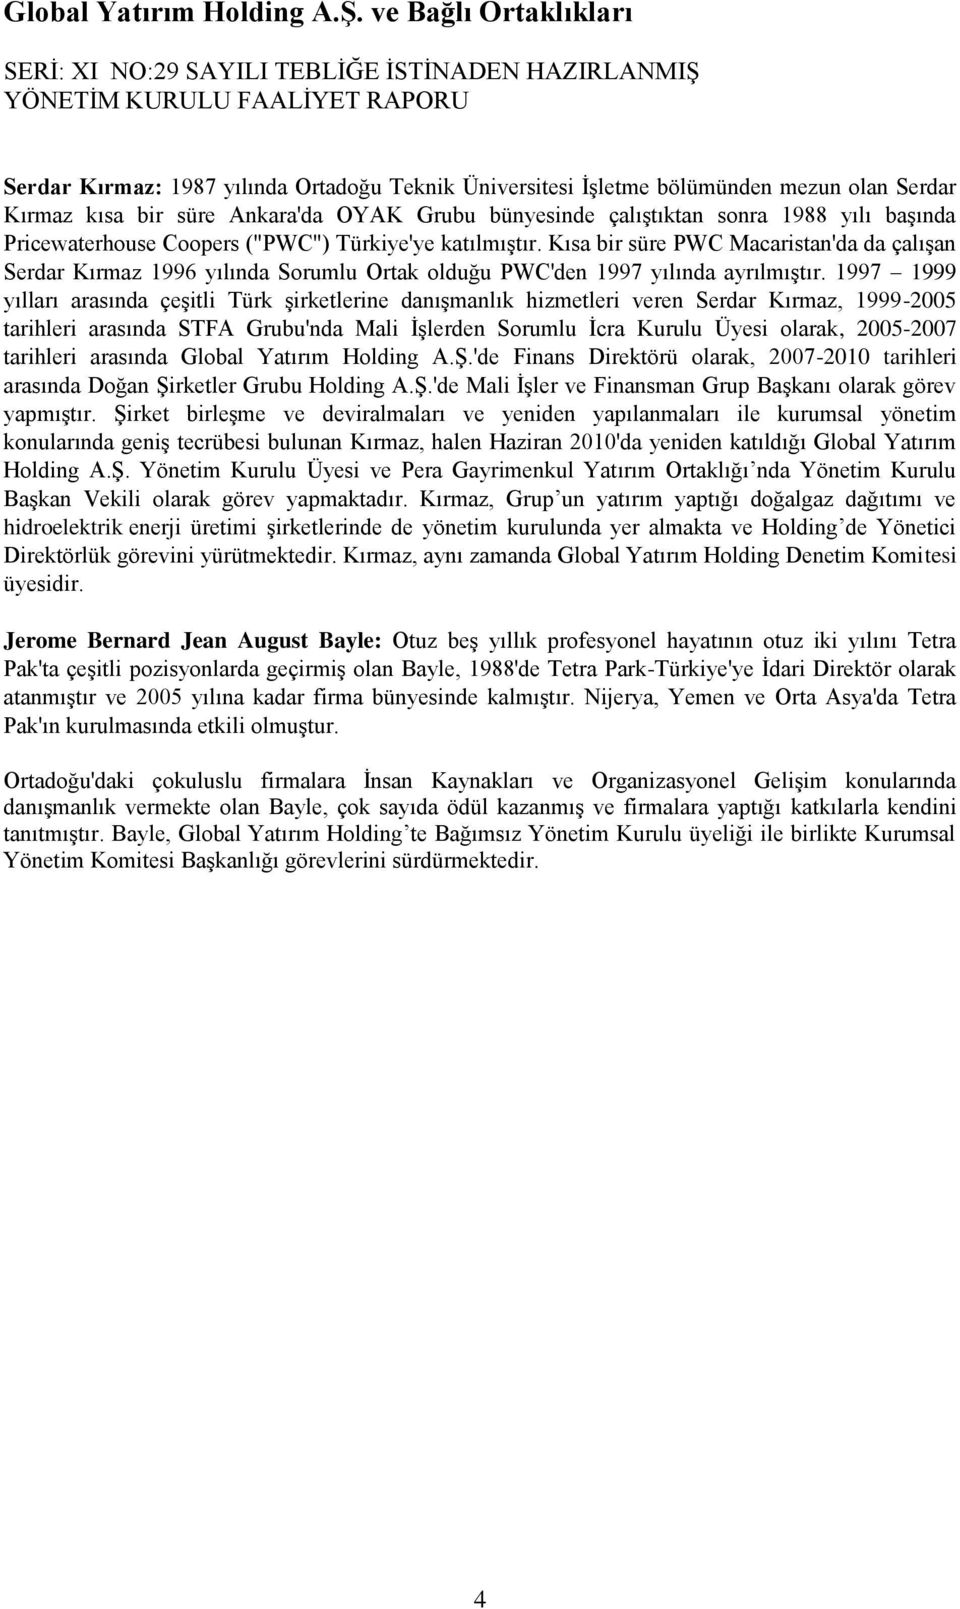 1997 1999 yılları arasında çeģitli Türk Ģirketlerine danıģmanlık hizmetleri veren Serdar Kırmaz, 1999-2005 tarihleri arasında STFA Grubu'nda Mali ĠĢlerden Sorumlu Ġcra Kurulu Üyesi olarak, 2005-2007